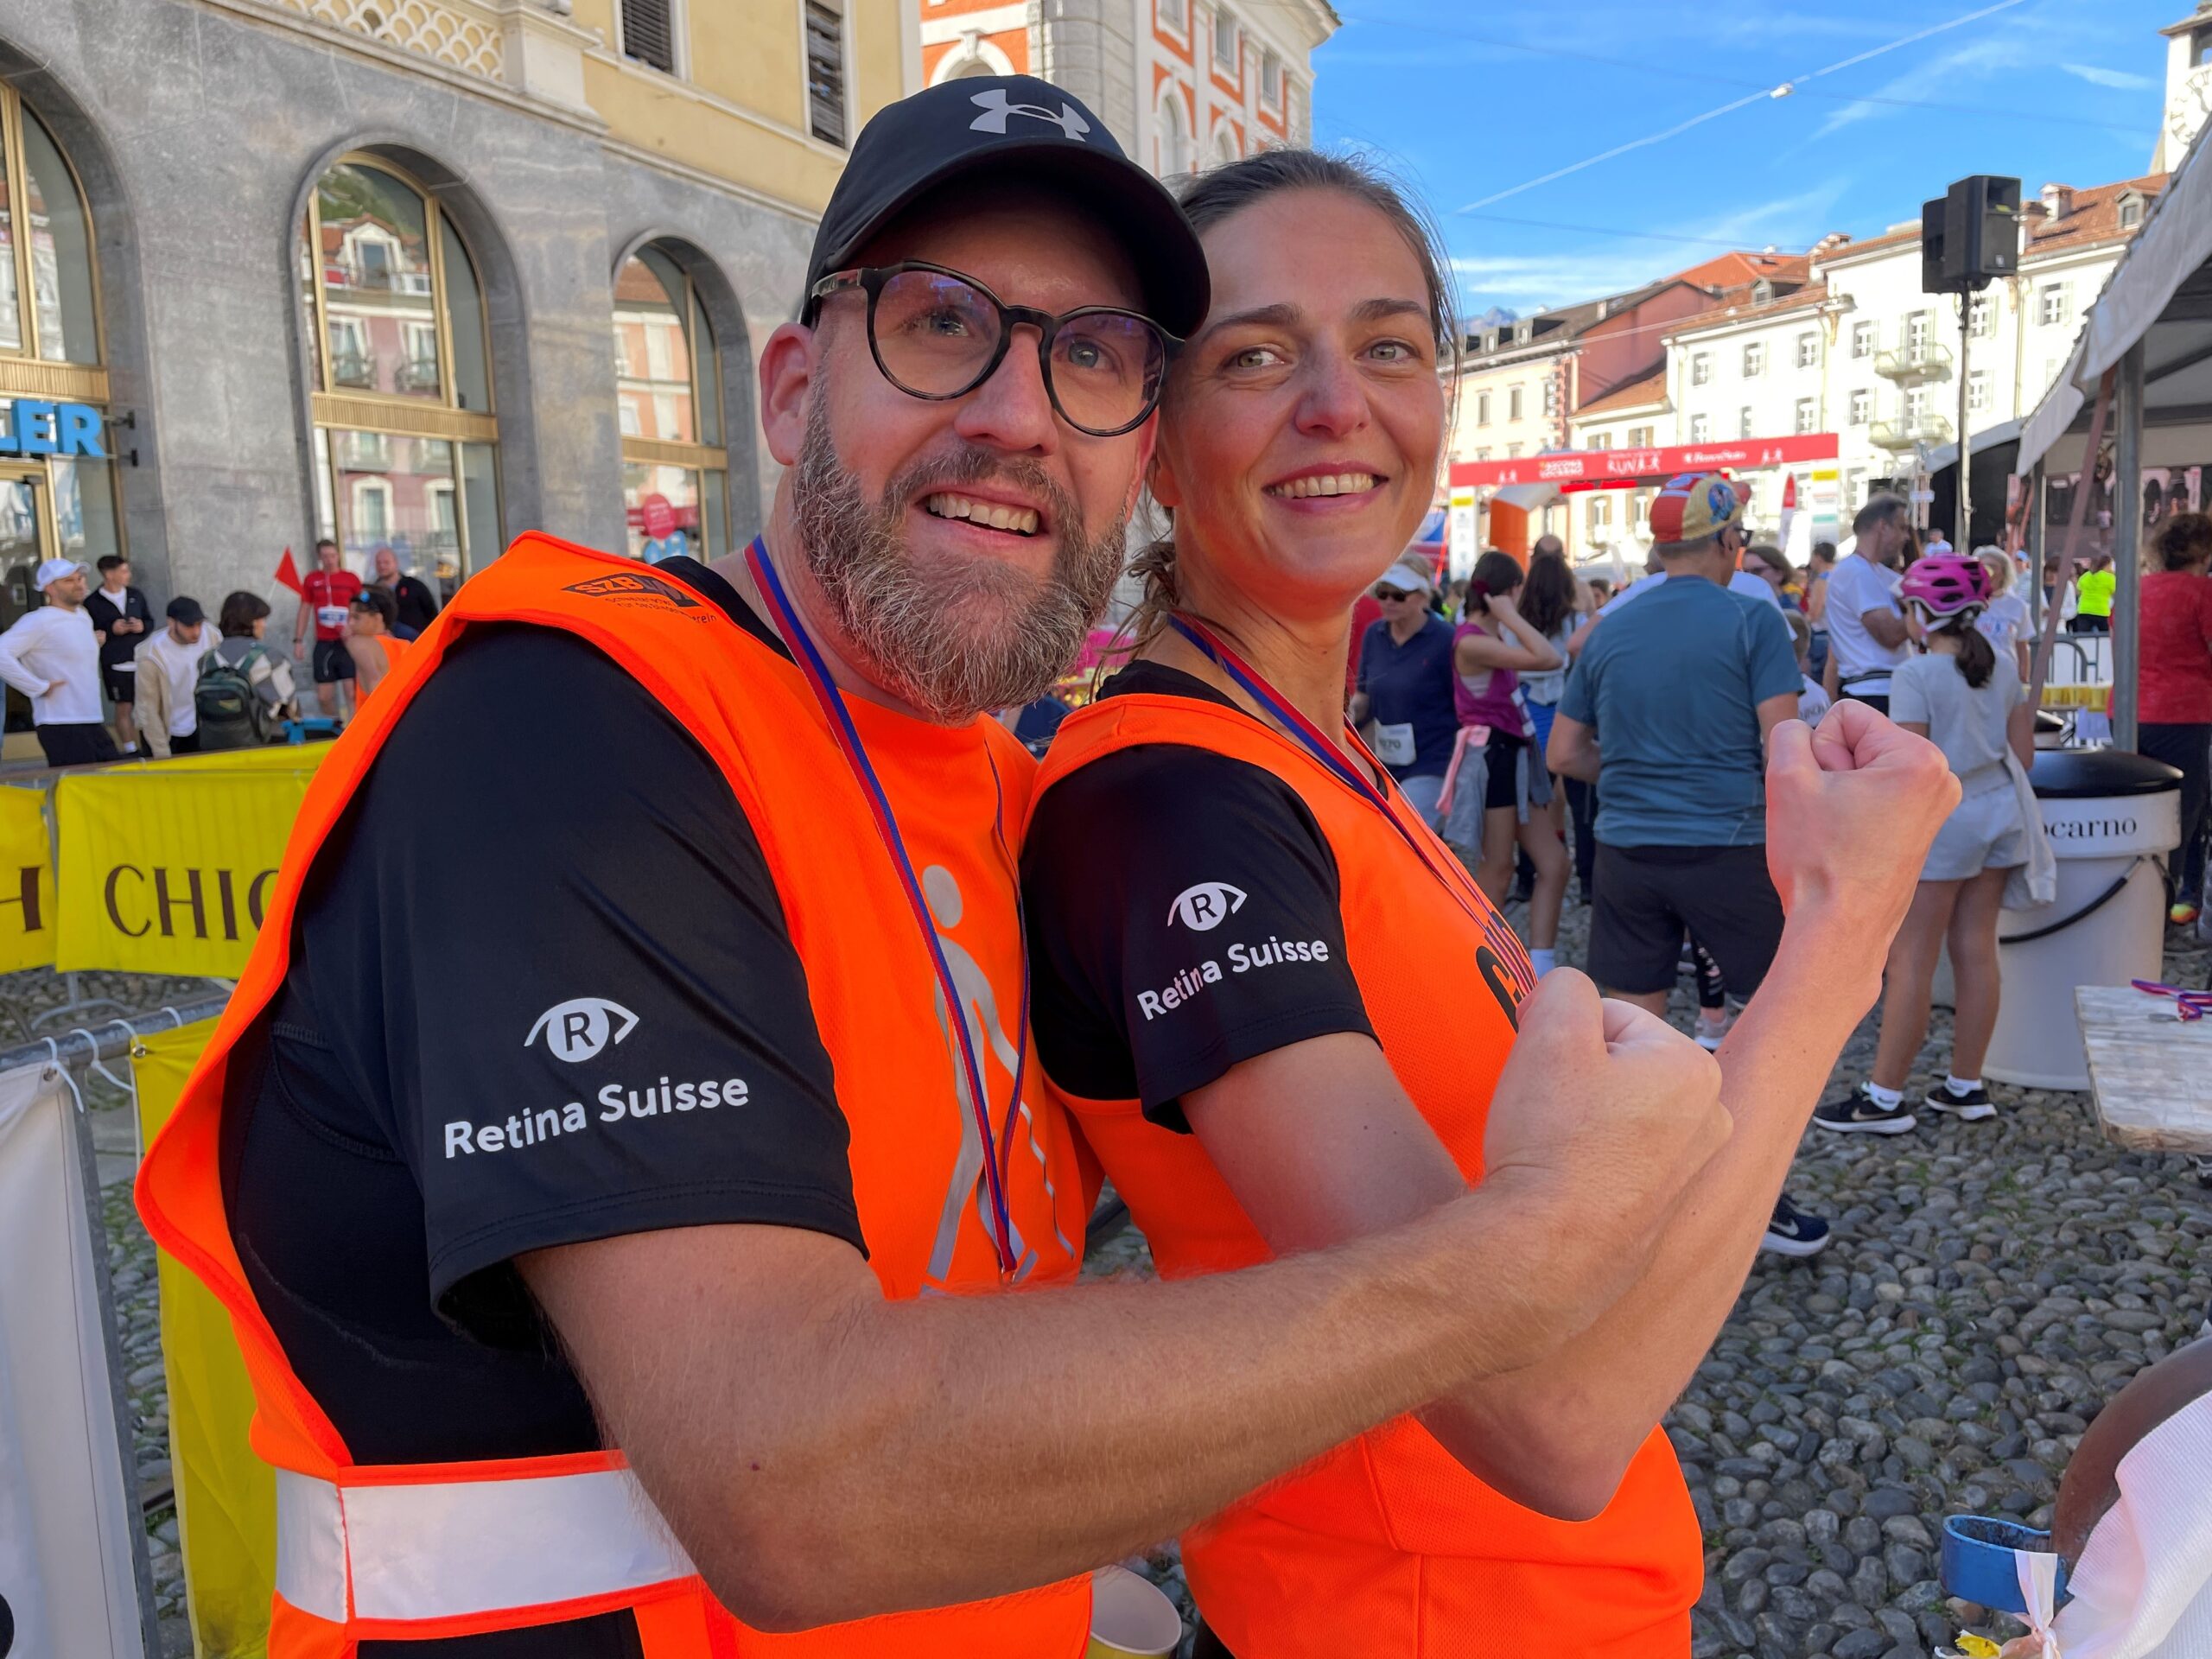 Erfolgreich in Locarno: Mario, der fast blinde Retina-Suisse-Runner